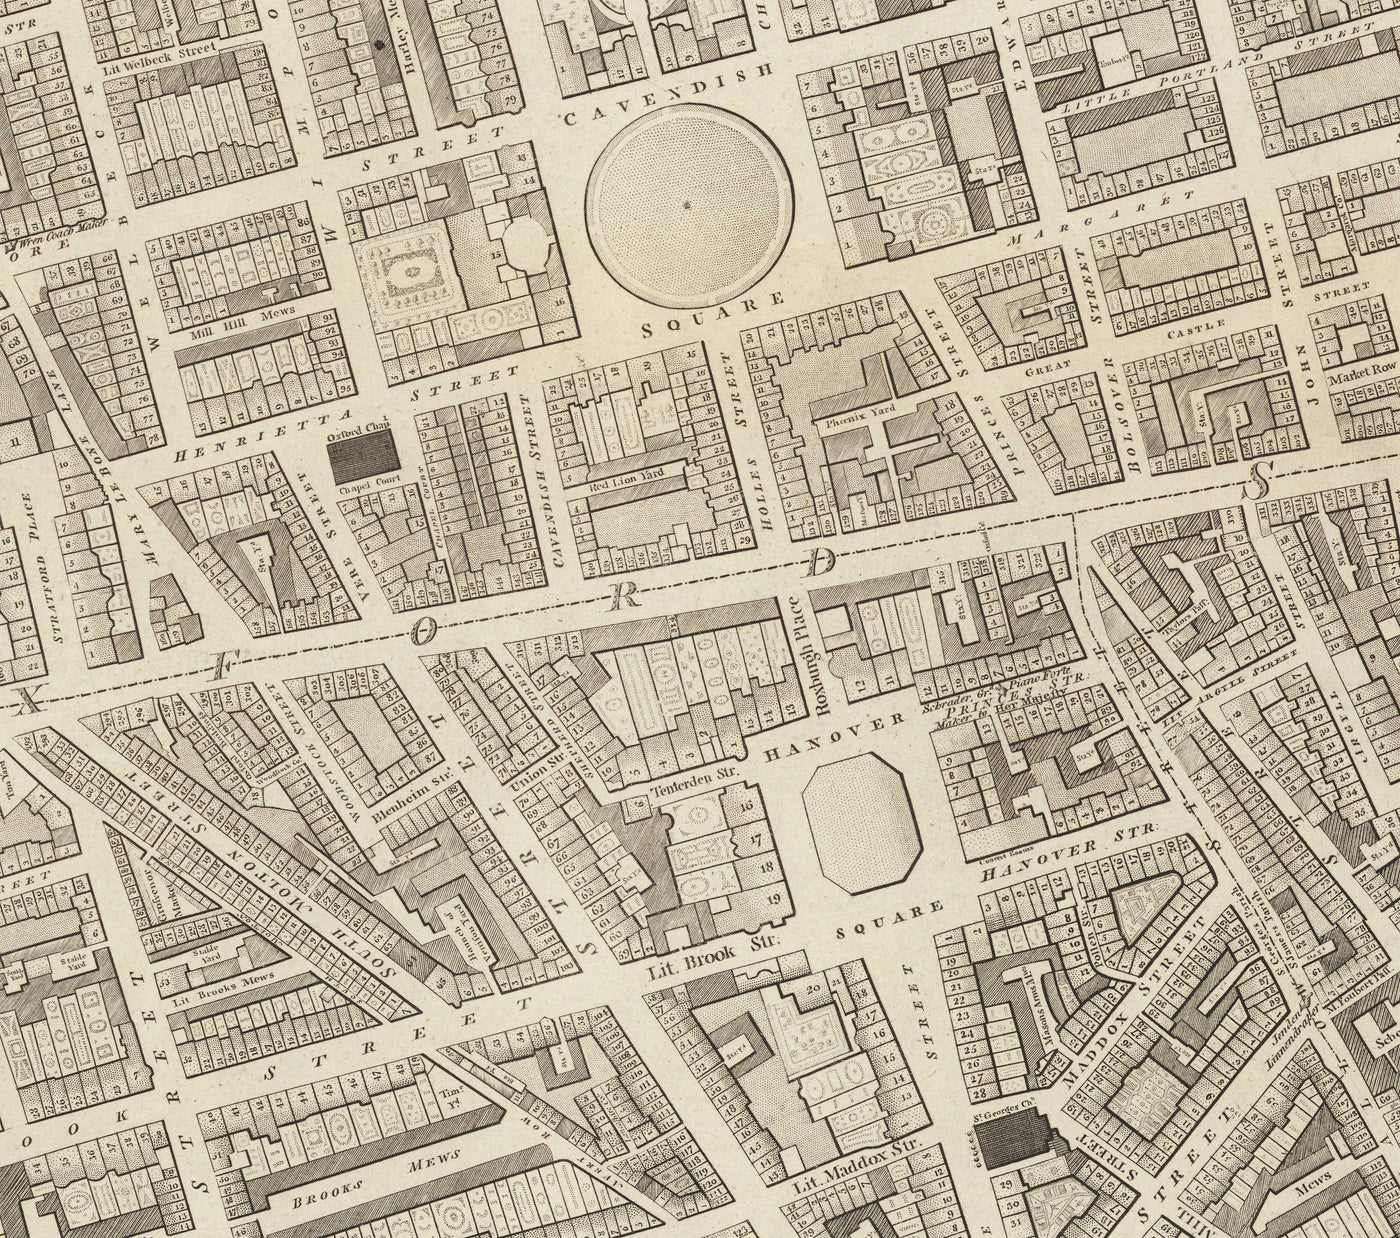 Mapa completo de Londres por Richard Horwood, 1799 - Todas las casas y edificios de Londres